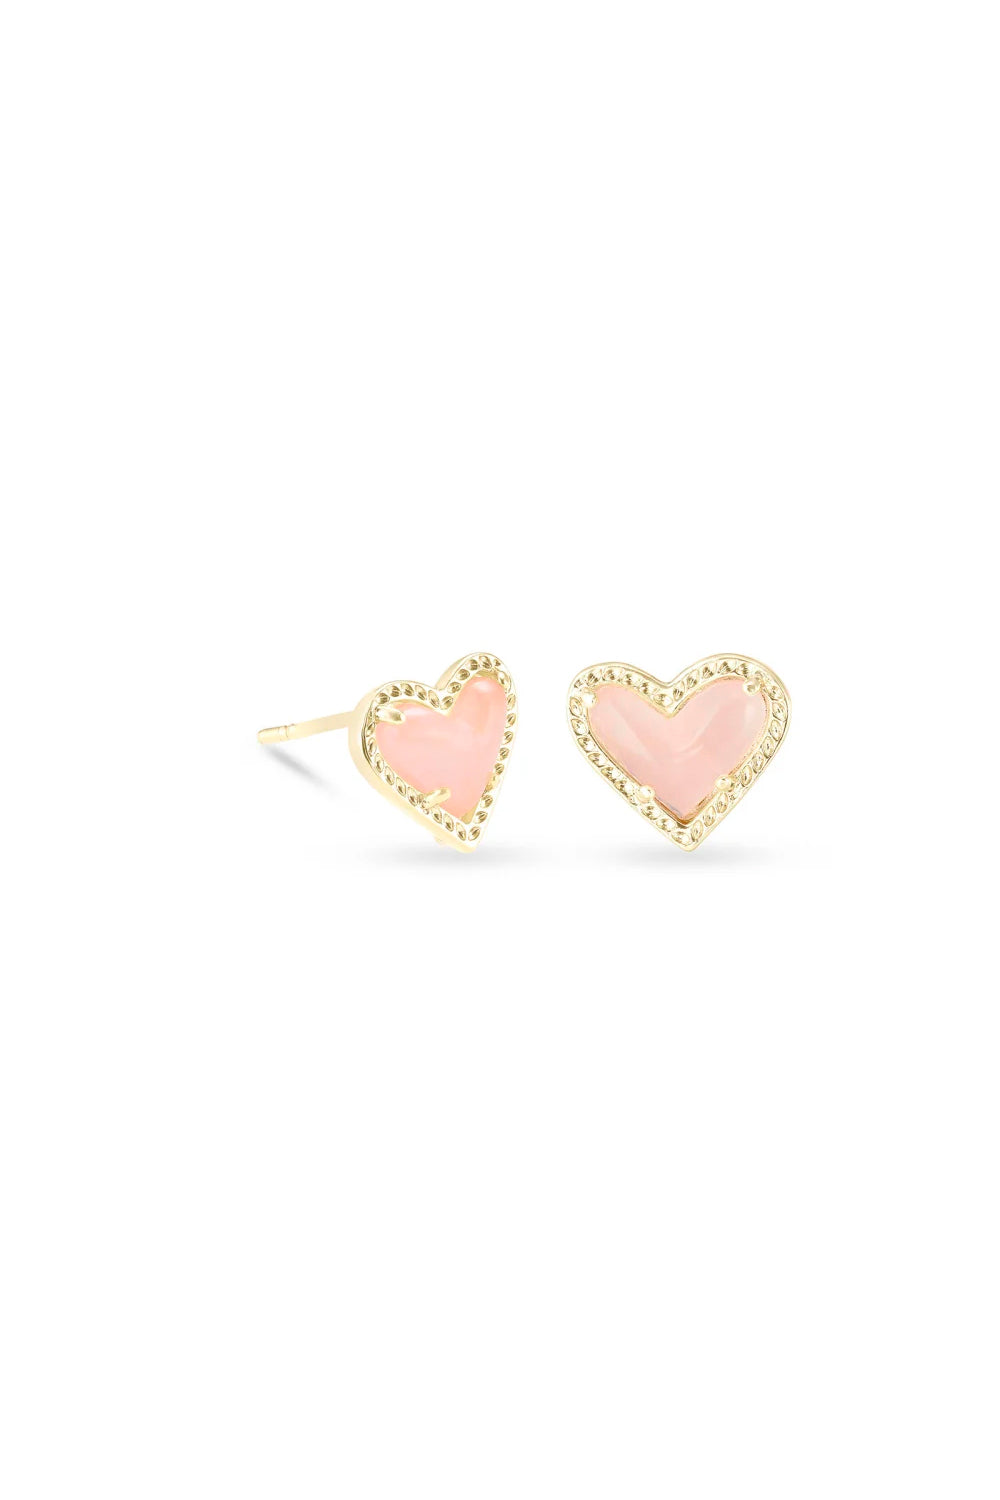 Kendra Scott: Ari Heart Gold Stud Earrings - Rose Quartz | Makk Fashions